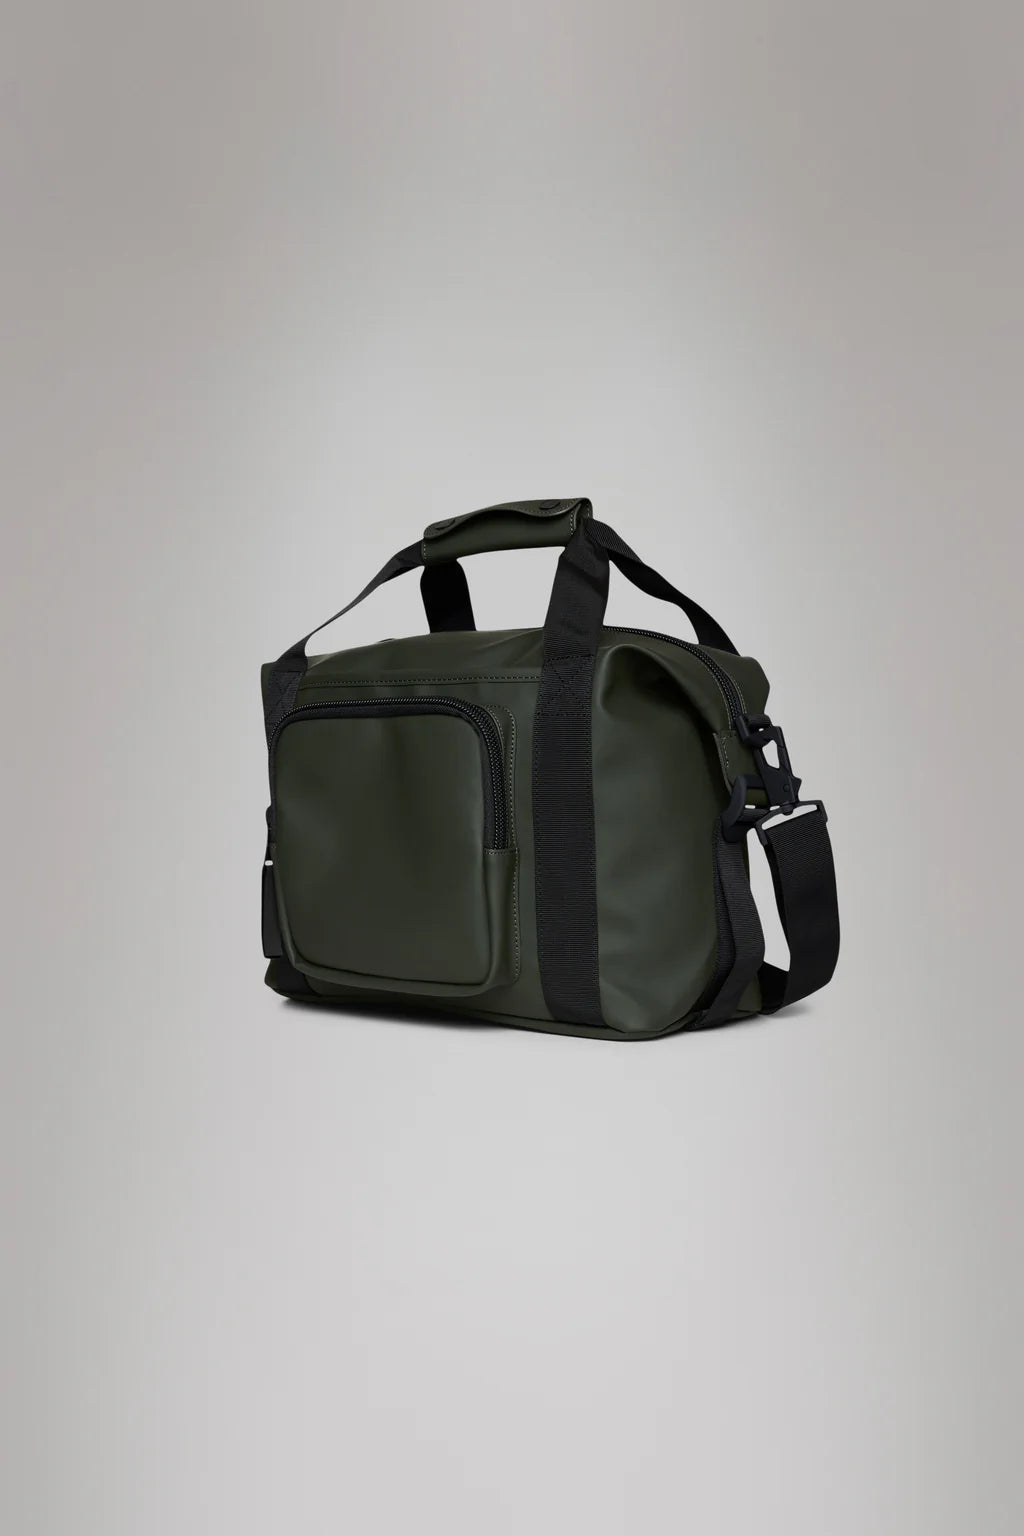 Texel Kit Bag Green